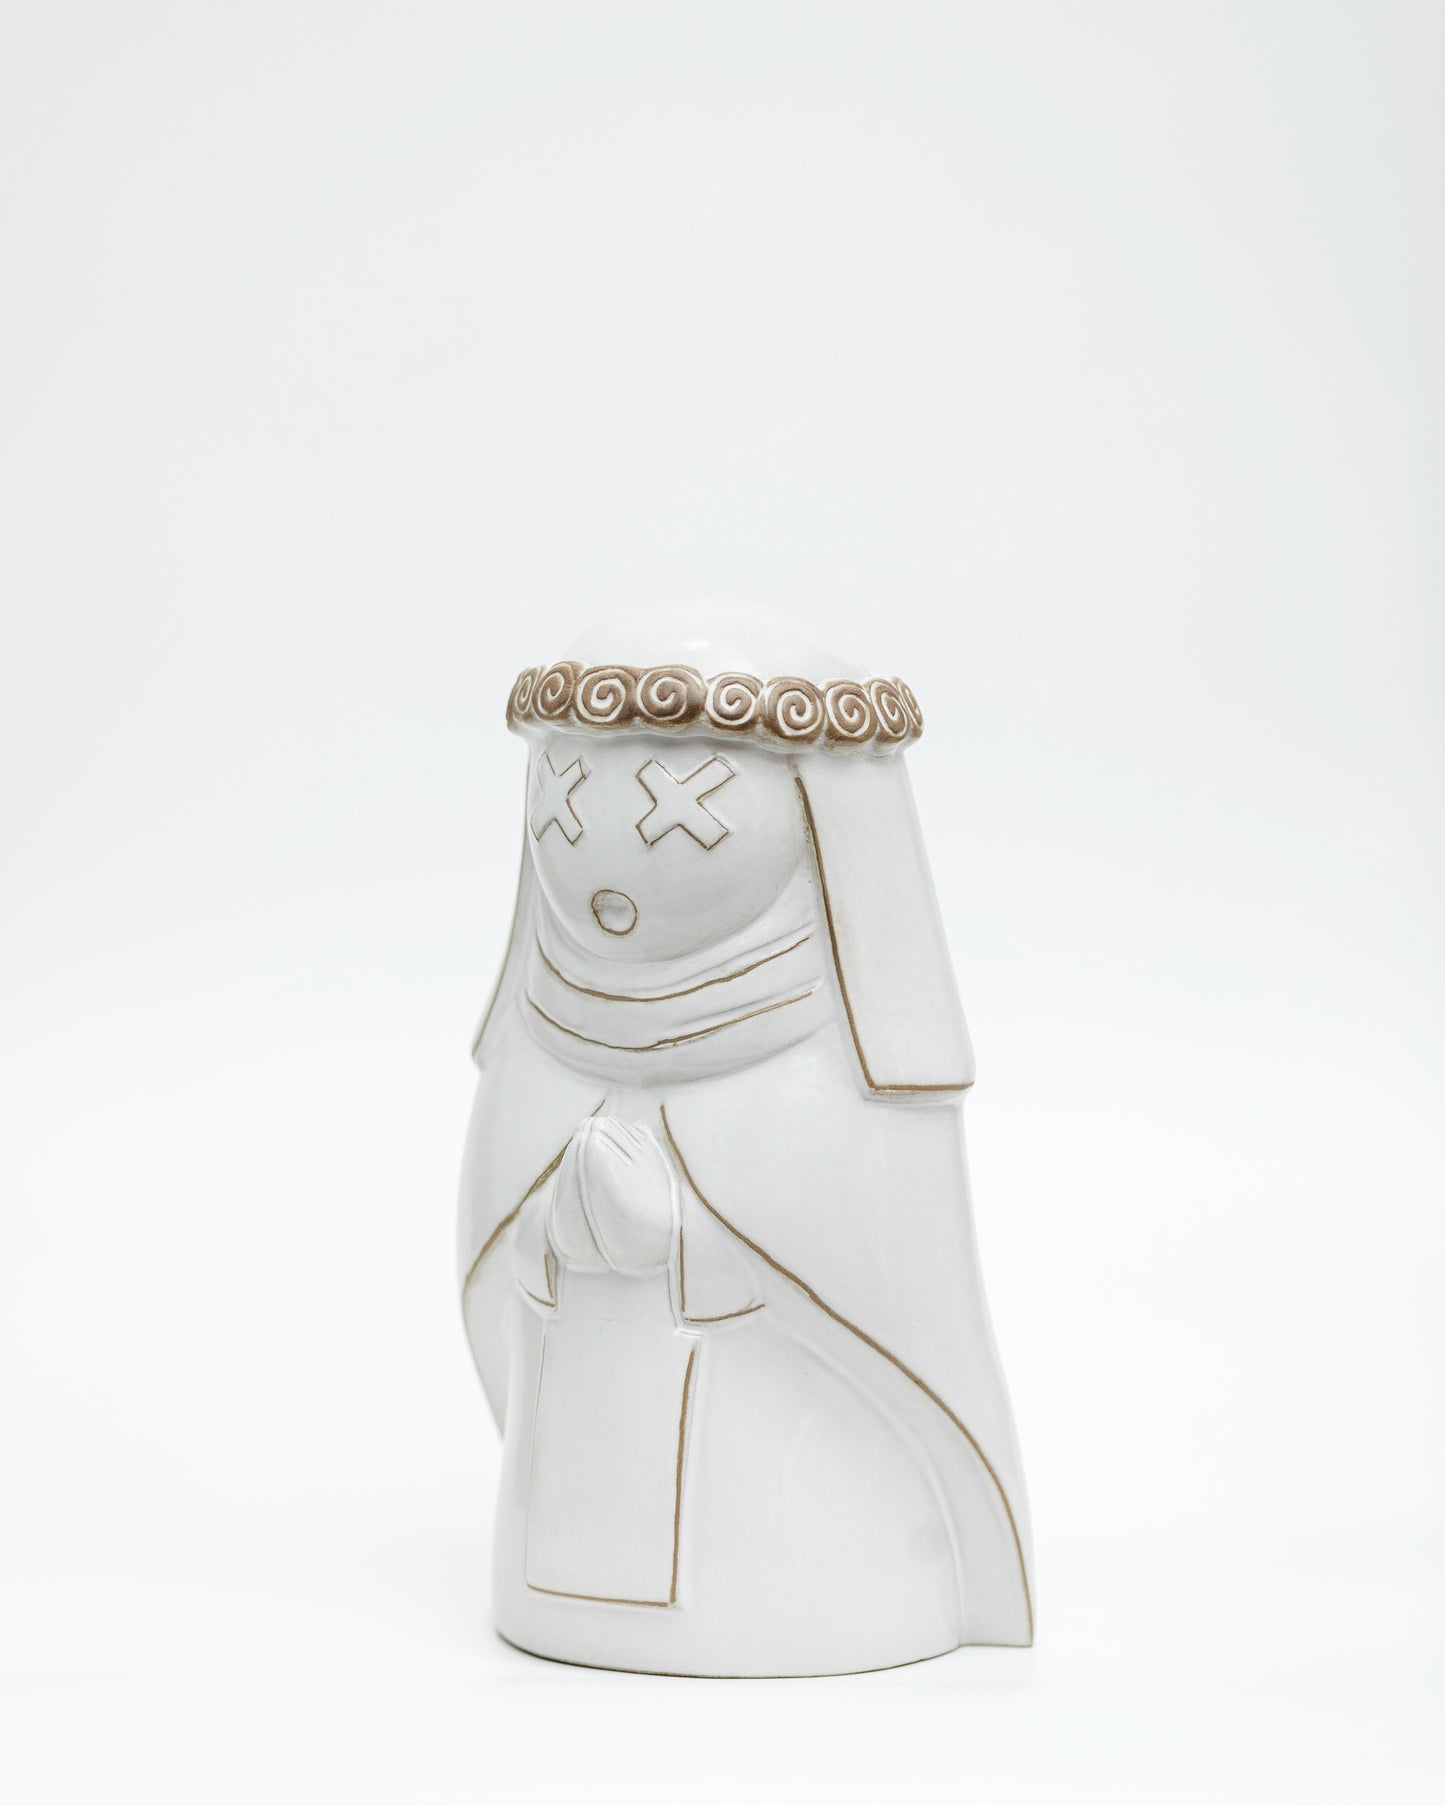 SANTARO.BOT.WHITE escultura en cerámica, Perujis, de El Imaquinario de Yute y Tocuyo